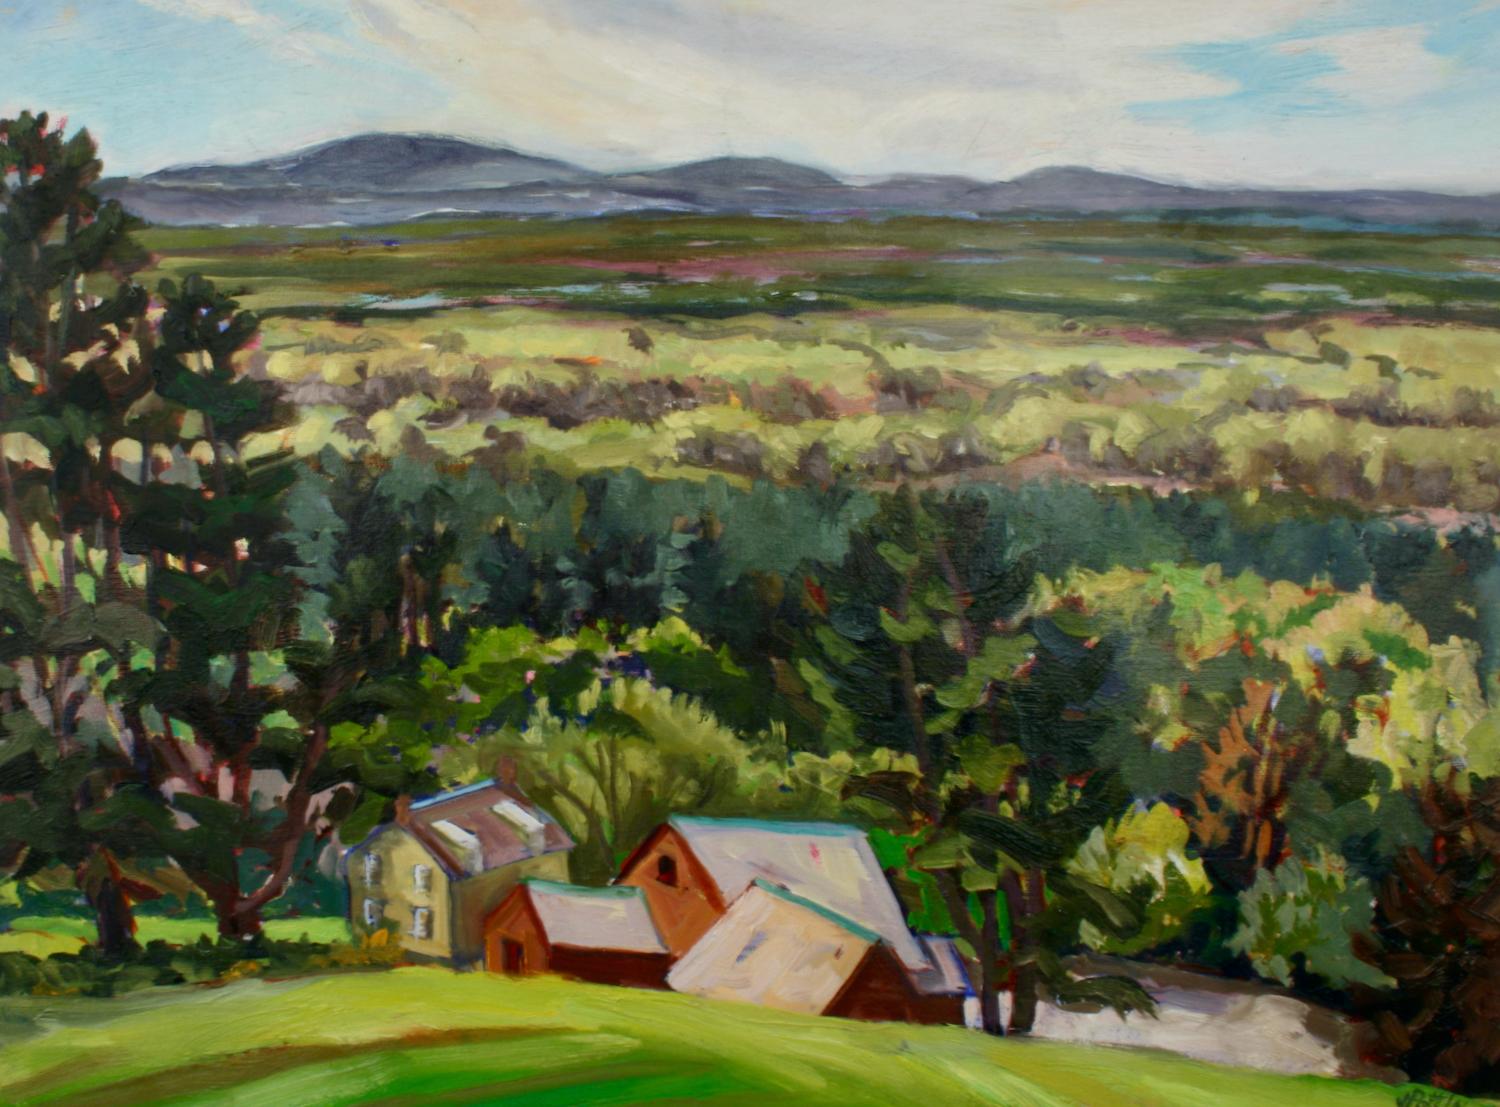 Jill Pottle Landscape Painting - "Many Fruitlands Museum Views", contemporary, landscape, oil painting